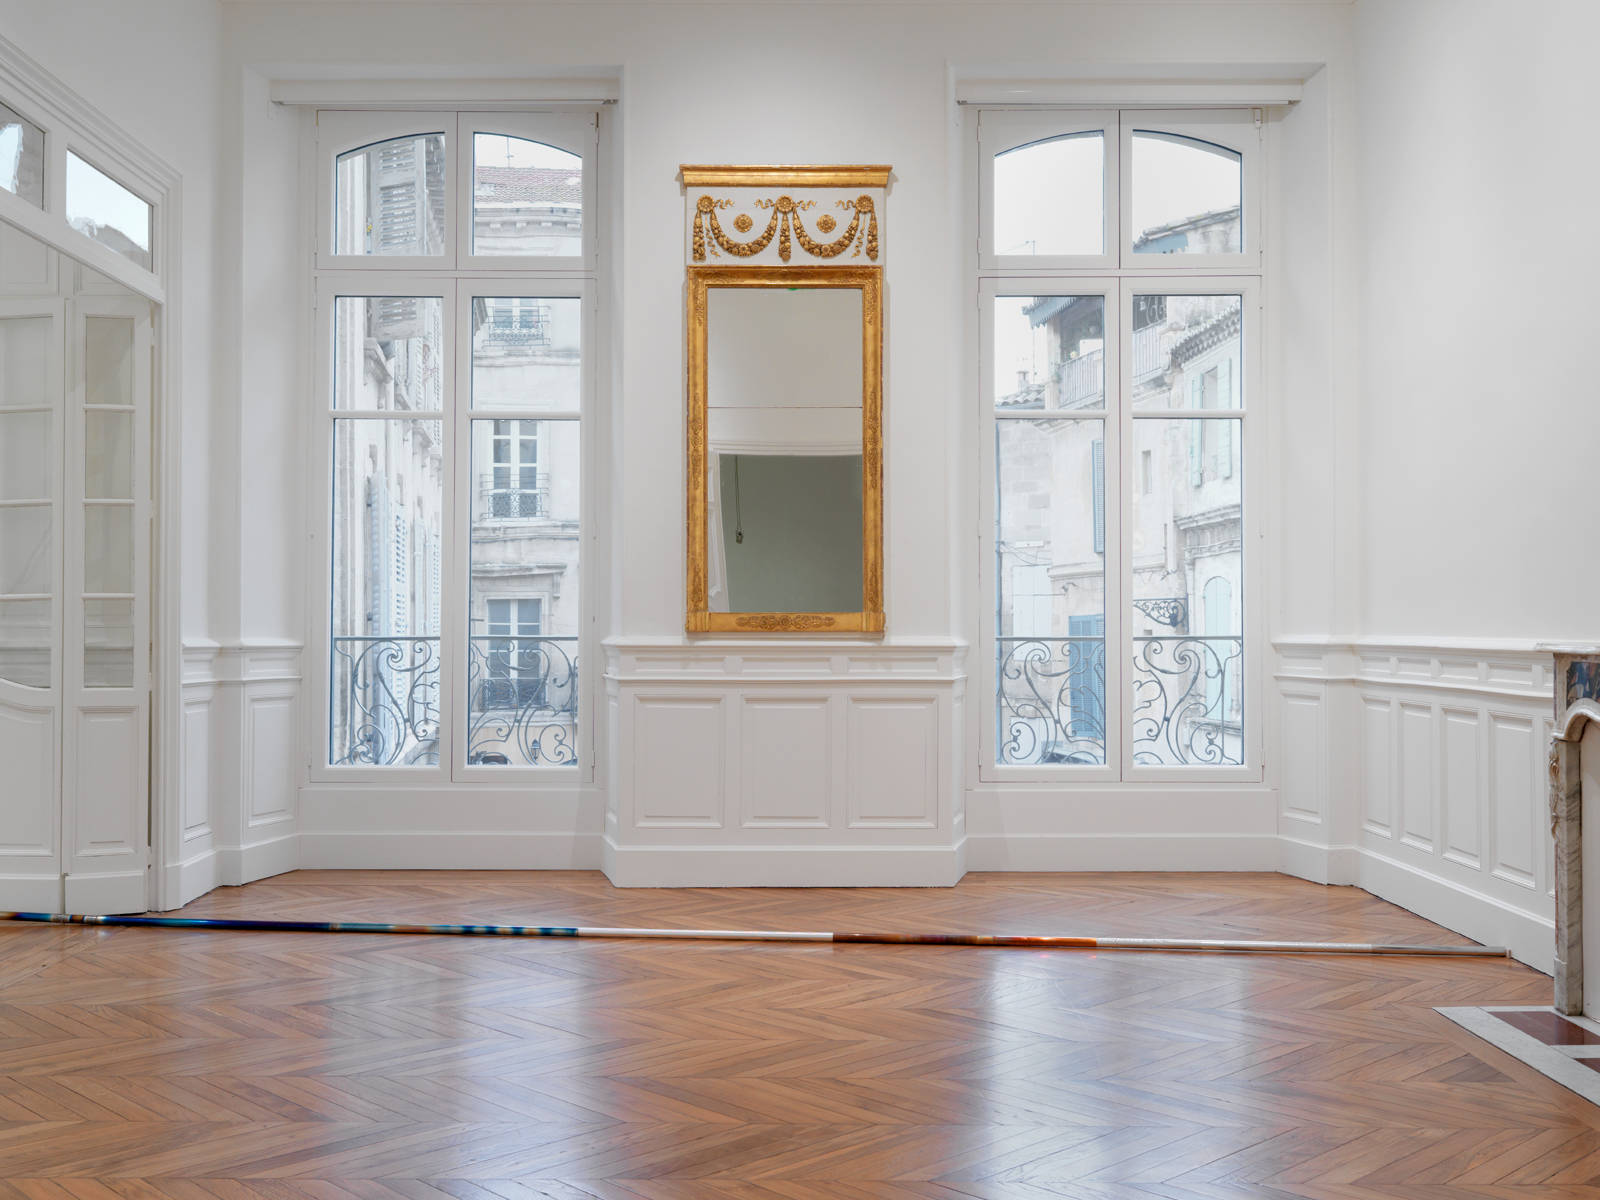 Raphael Hefti / "On Core / Encore", exhibition view, Fondation Vincent van Gogh, Arles / 2015